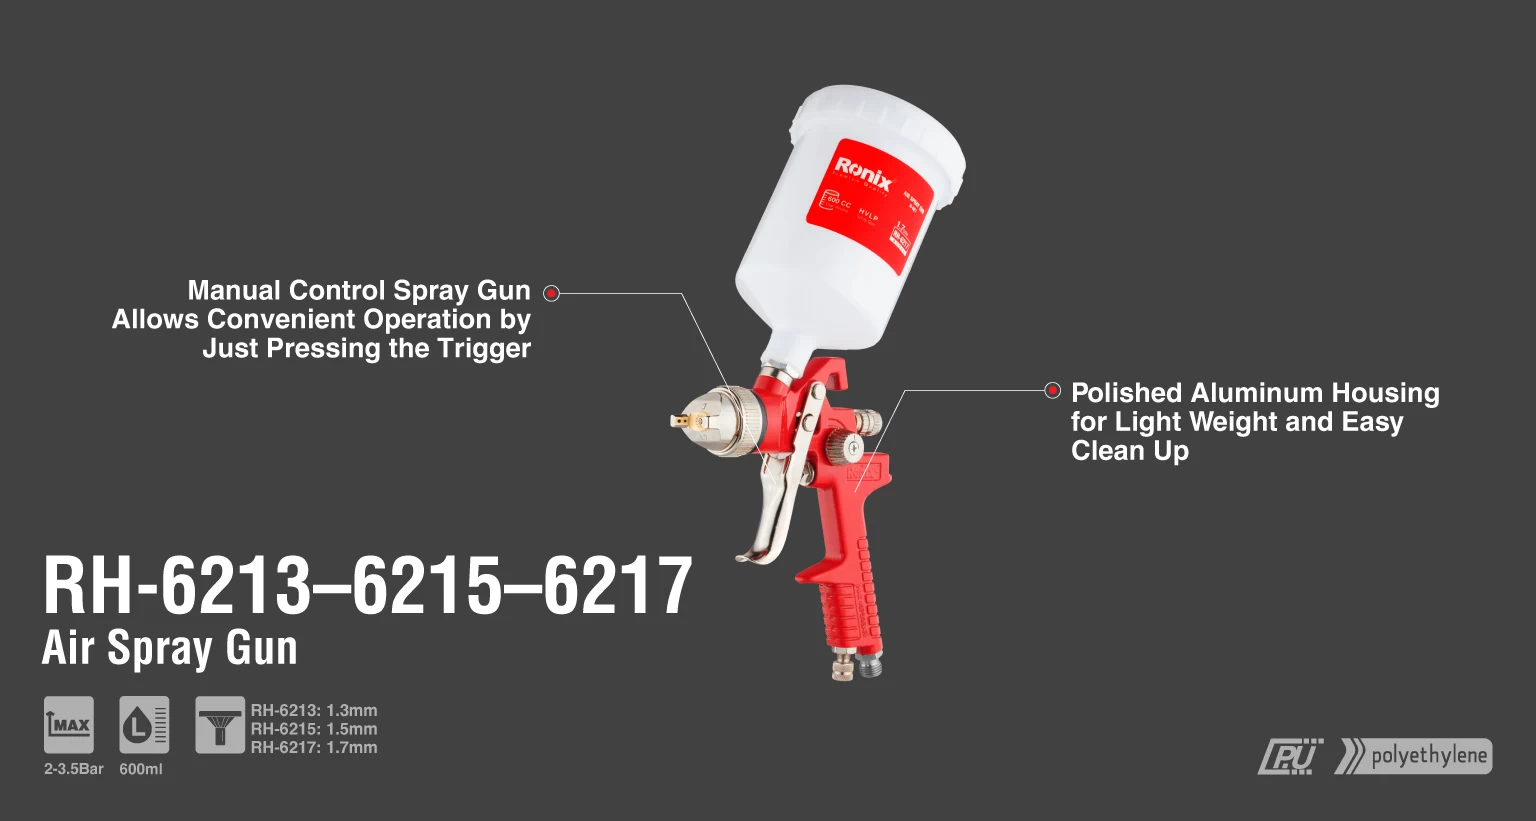 HVLP Air Spray Gun, 2-3.5Bar, 1.3mm Nozzle_details